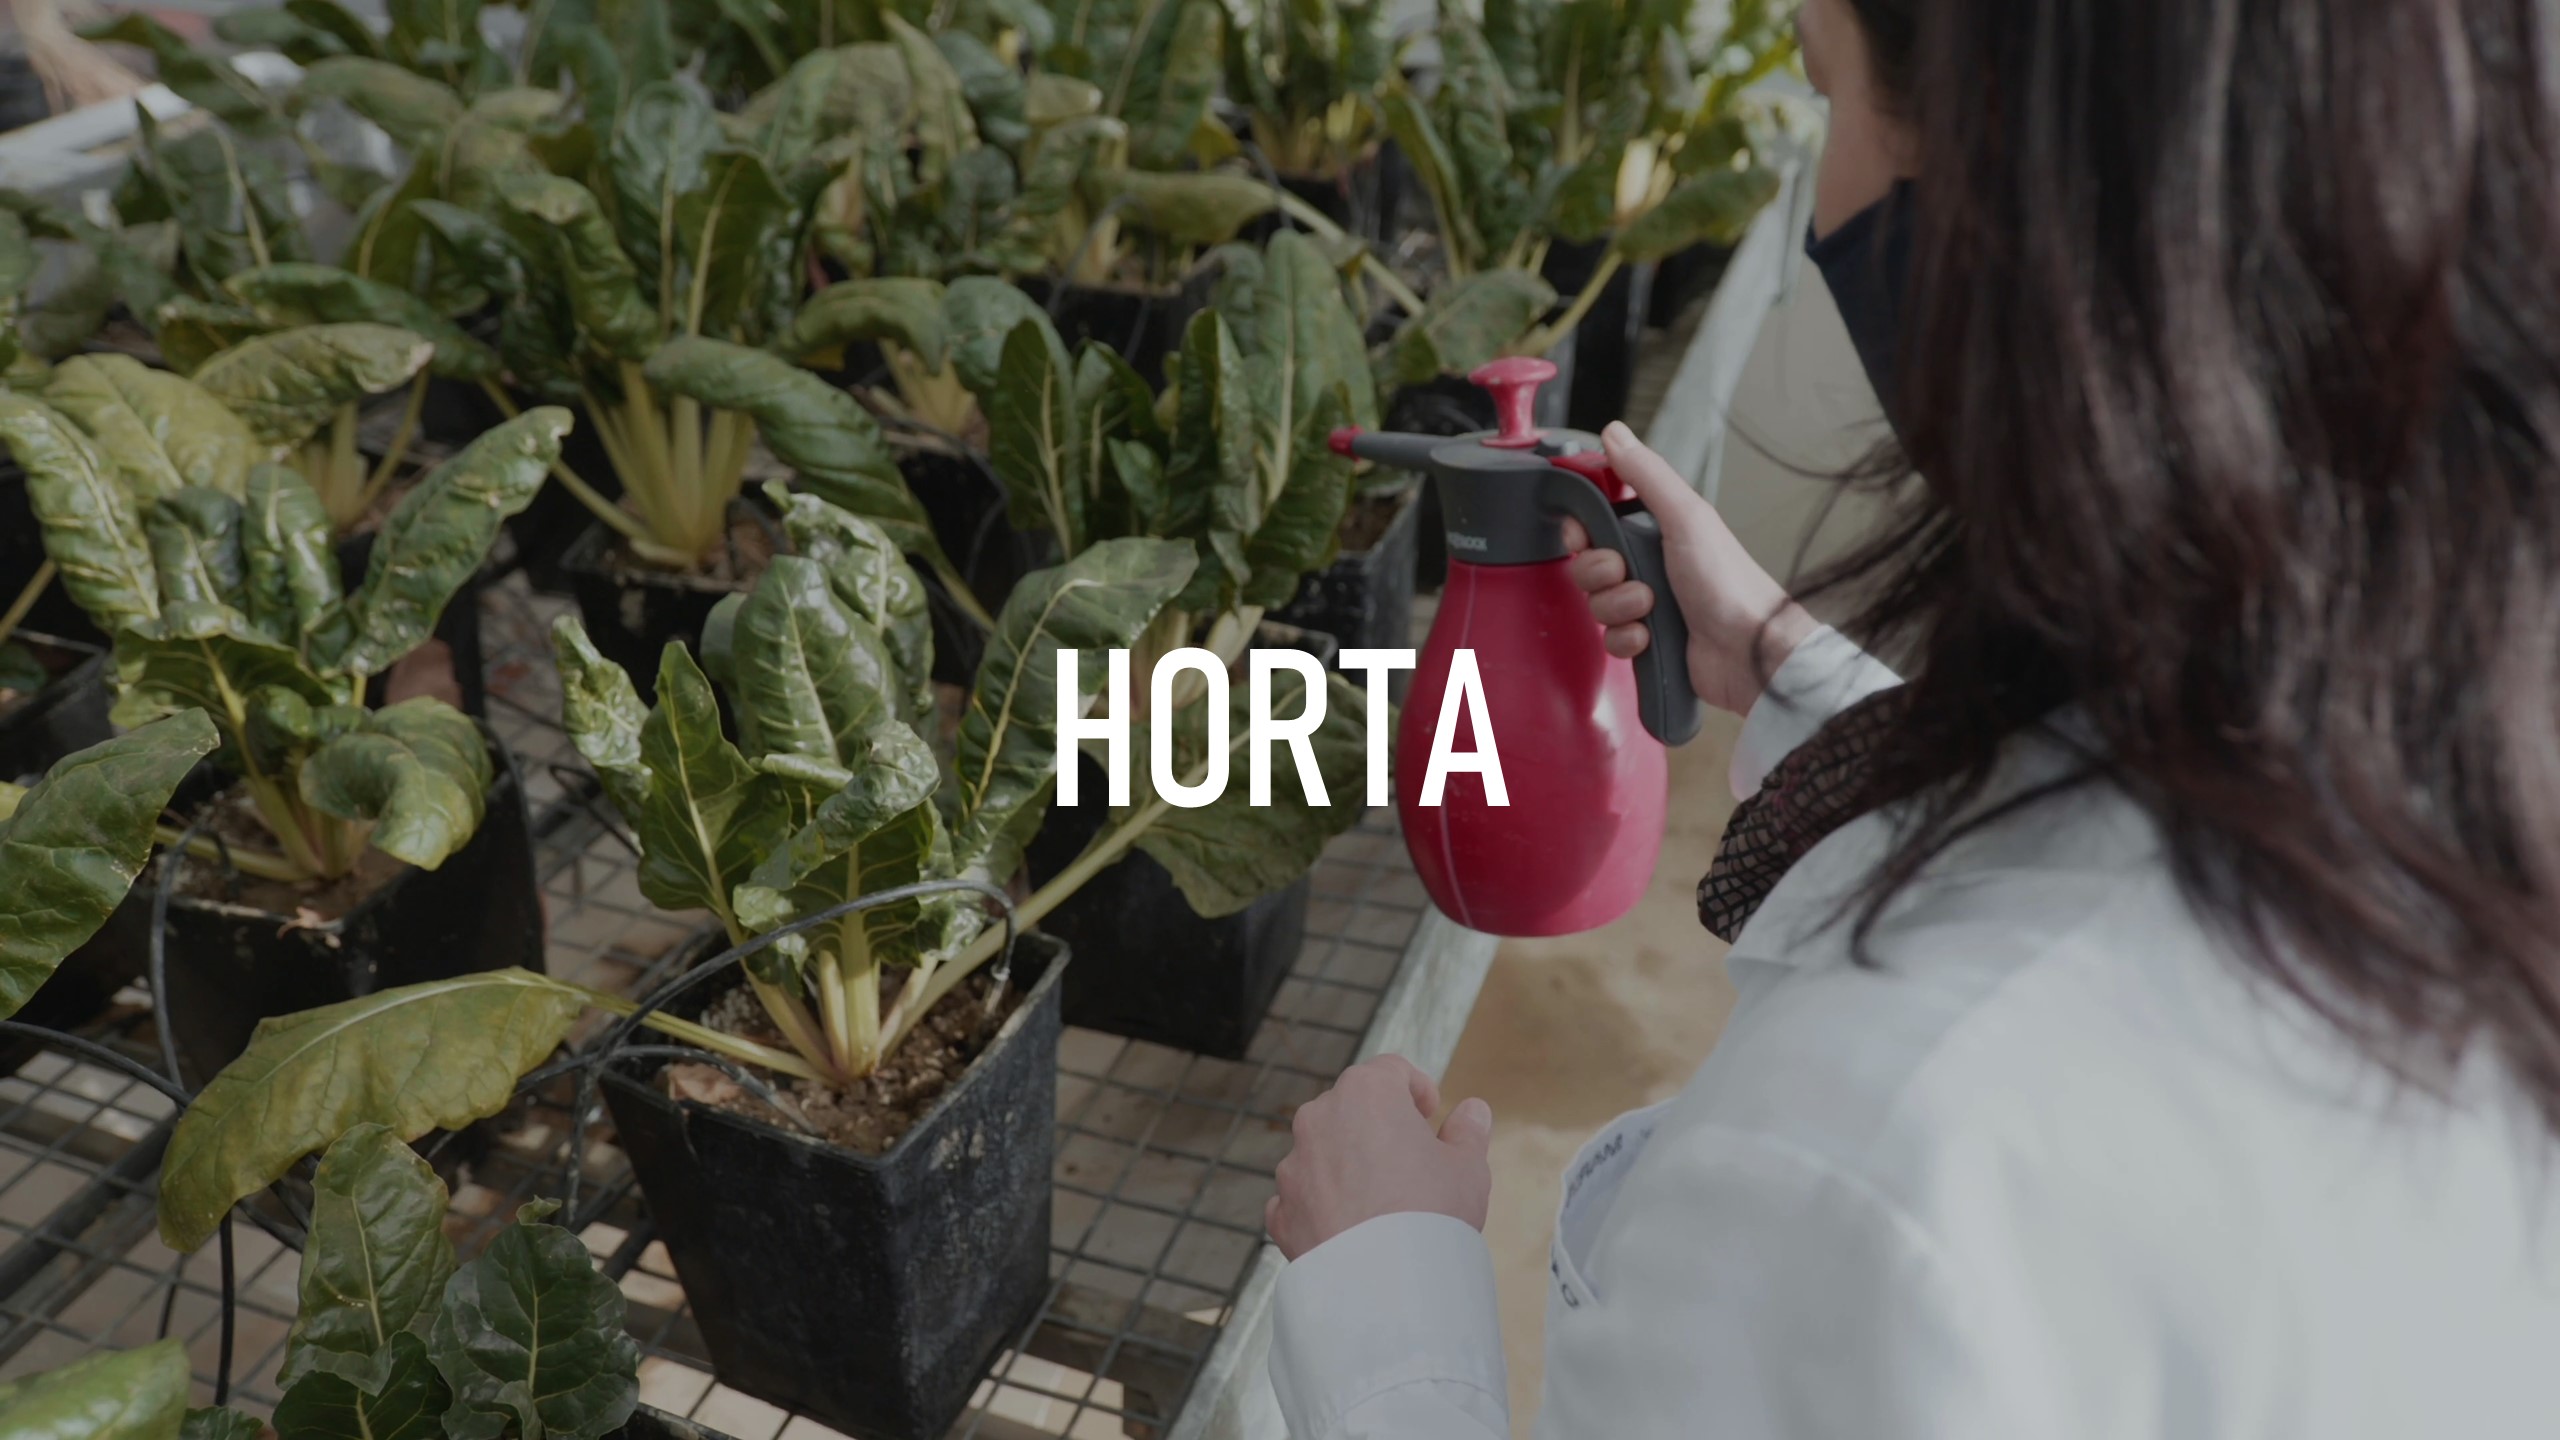 Imagen descriptiva del proyecto colaborativo Horta